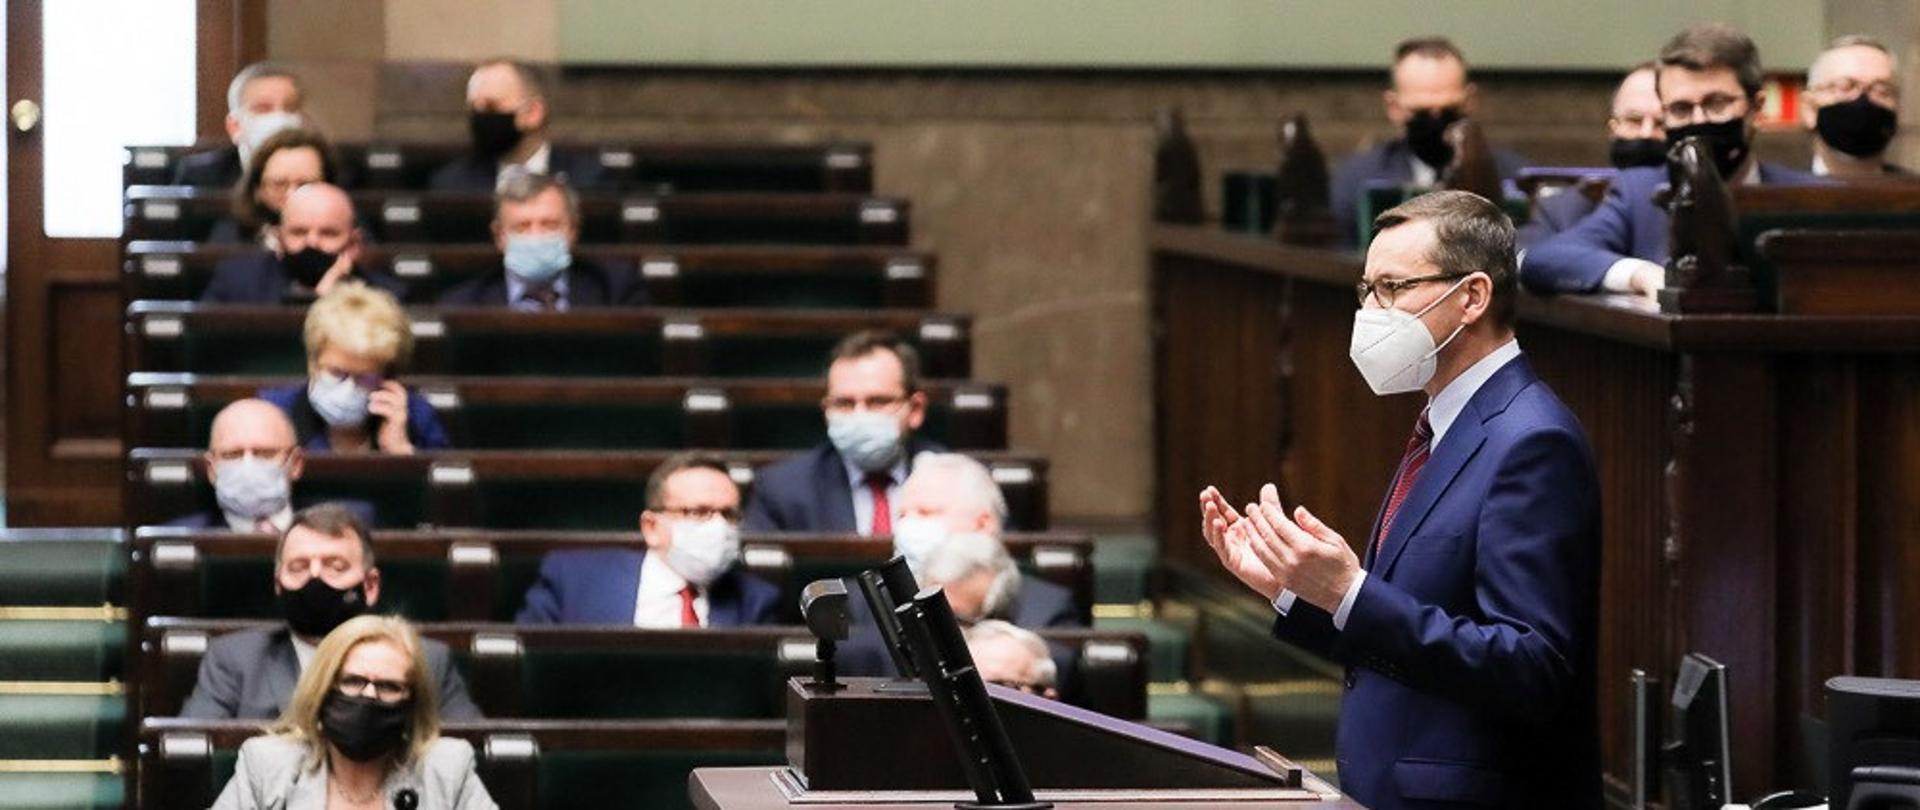 Premier Mateusz Morawiecki stoi przy mównicy w Sejmie. Na drugim planie posłowie siedzący w ławach sejmowych.